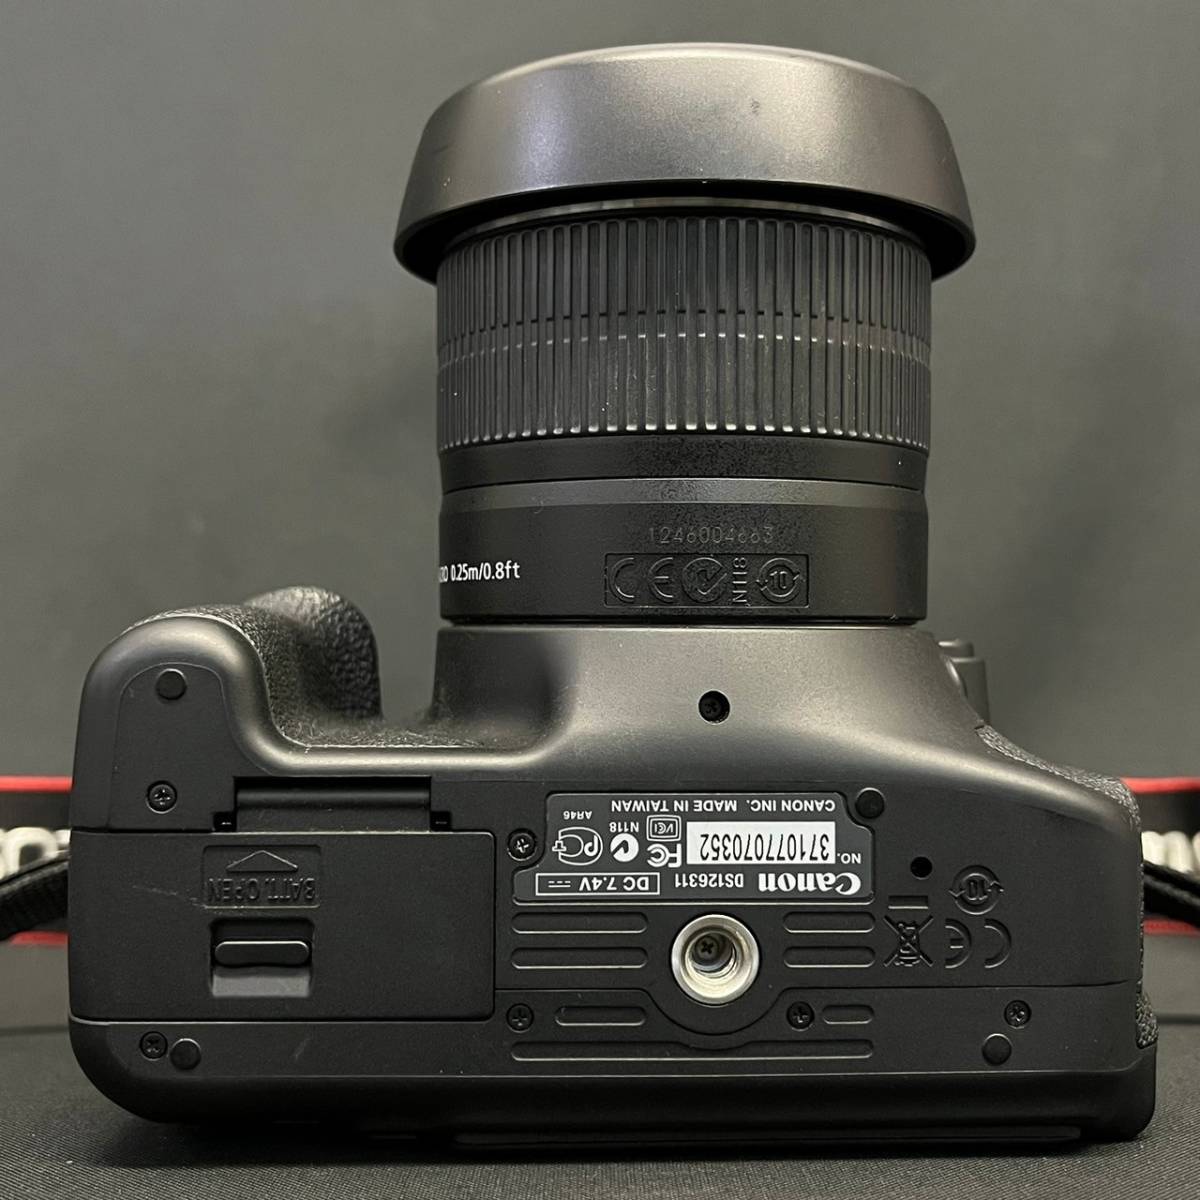 BKd047C 60 箱付き Canon EOS Kiss X5 レンズキット ZOOM LENS EF-S 18-55mm 1:3.5-5.6 IS II デジタル一眼レフカメラ _画像7